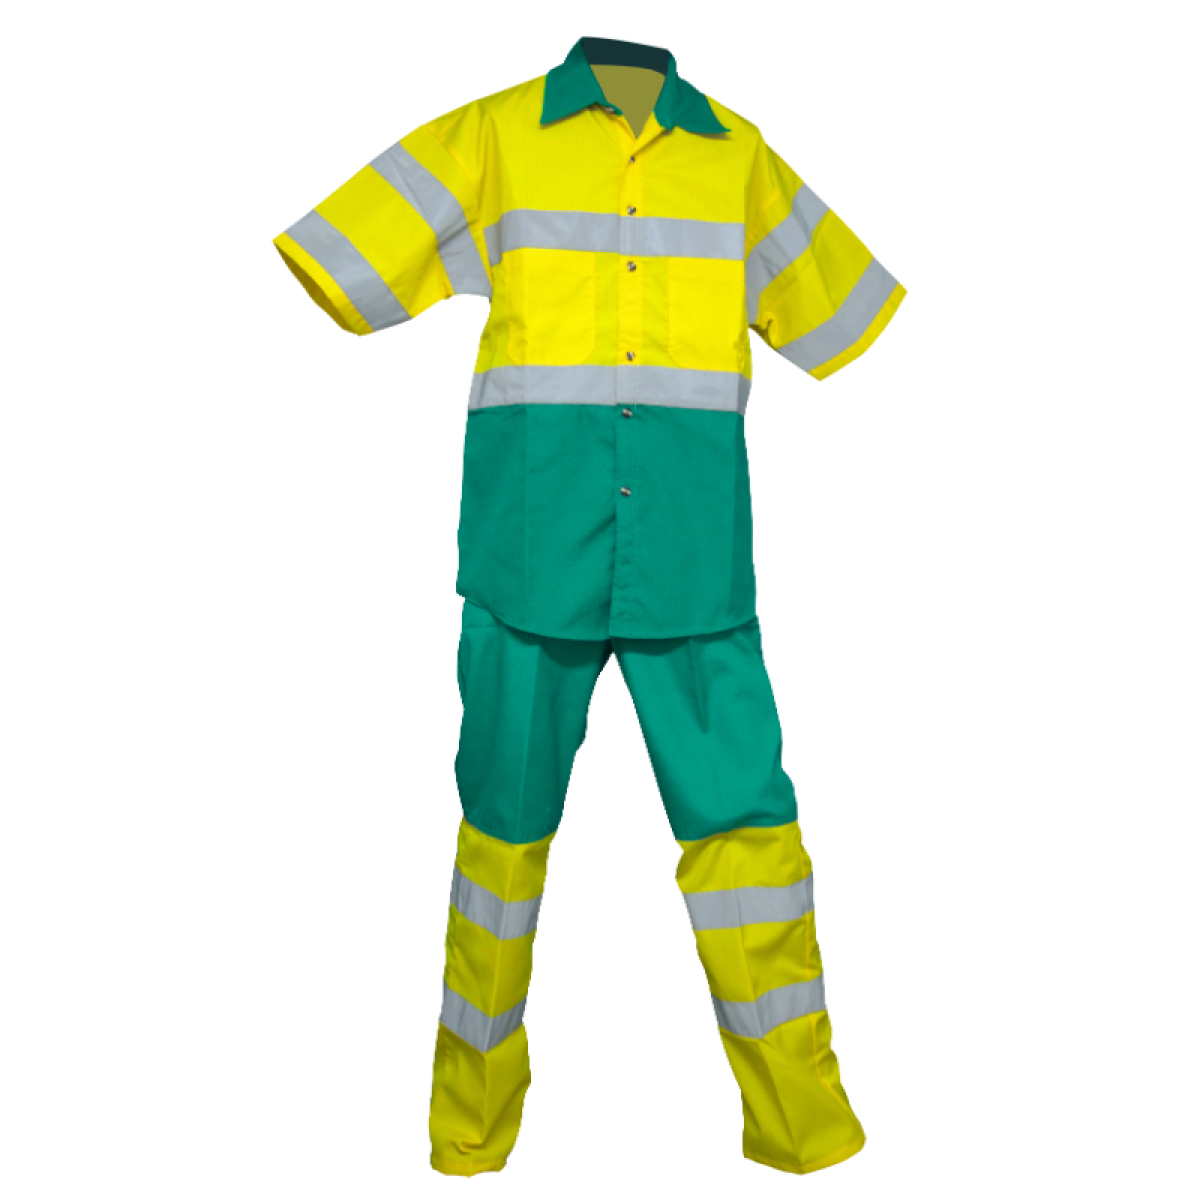 La ropa de trabajo industrial proporciona seguridad, comodidad y mayor visibilidad para los trabajadores en avenidas de alto flujo.